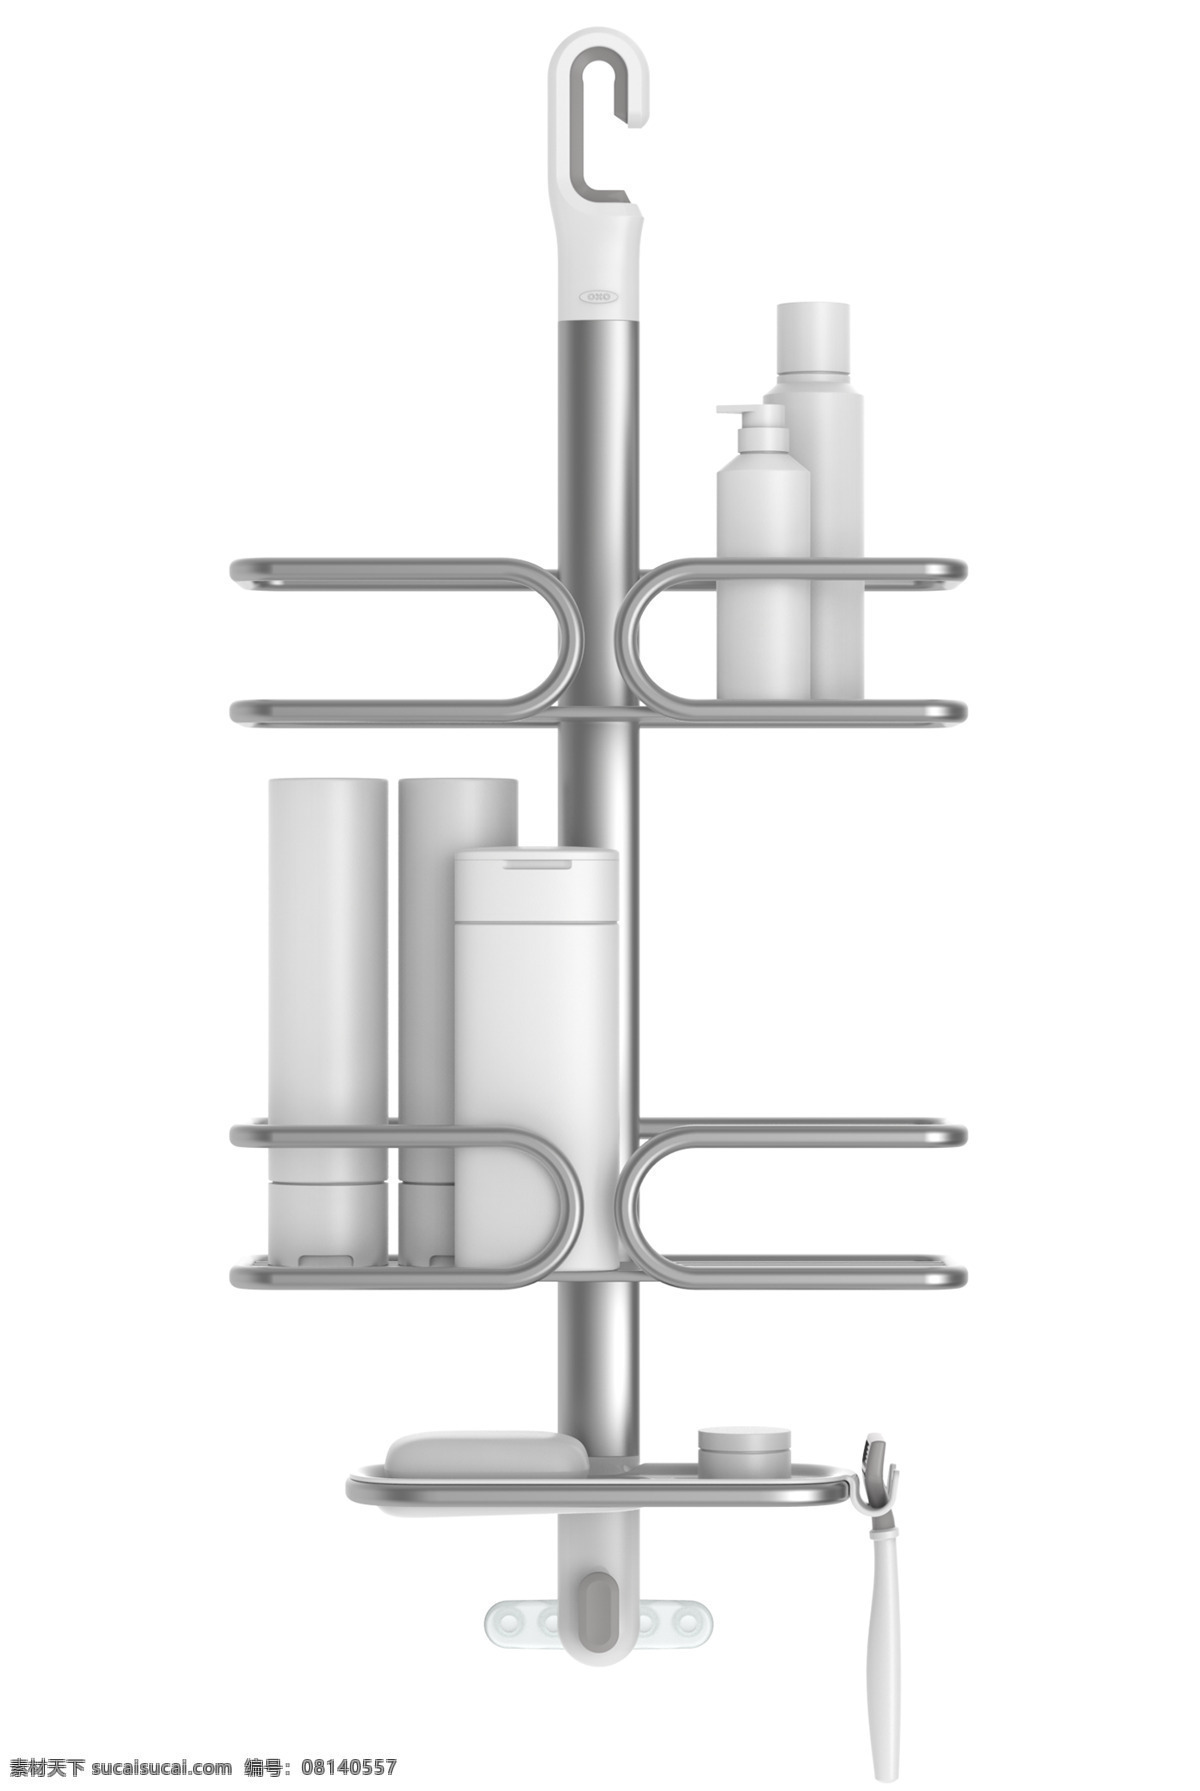 淋浴器支架 工业产品 工业设计 沐浴工具 生活用具 支架